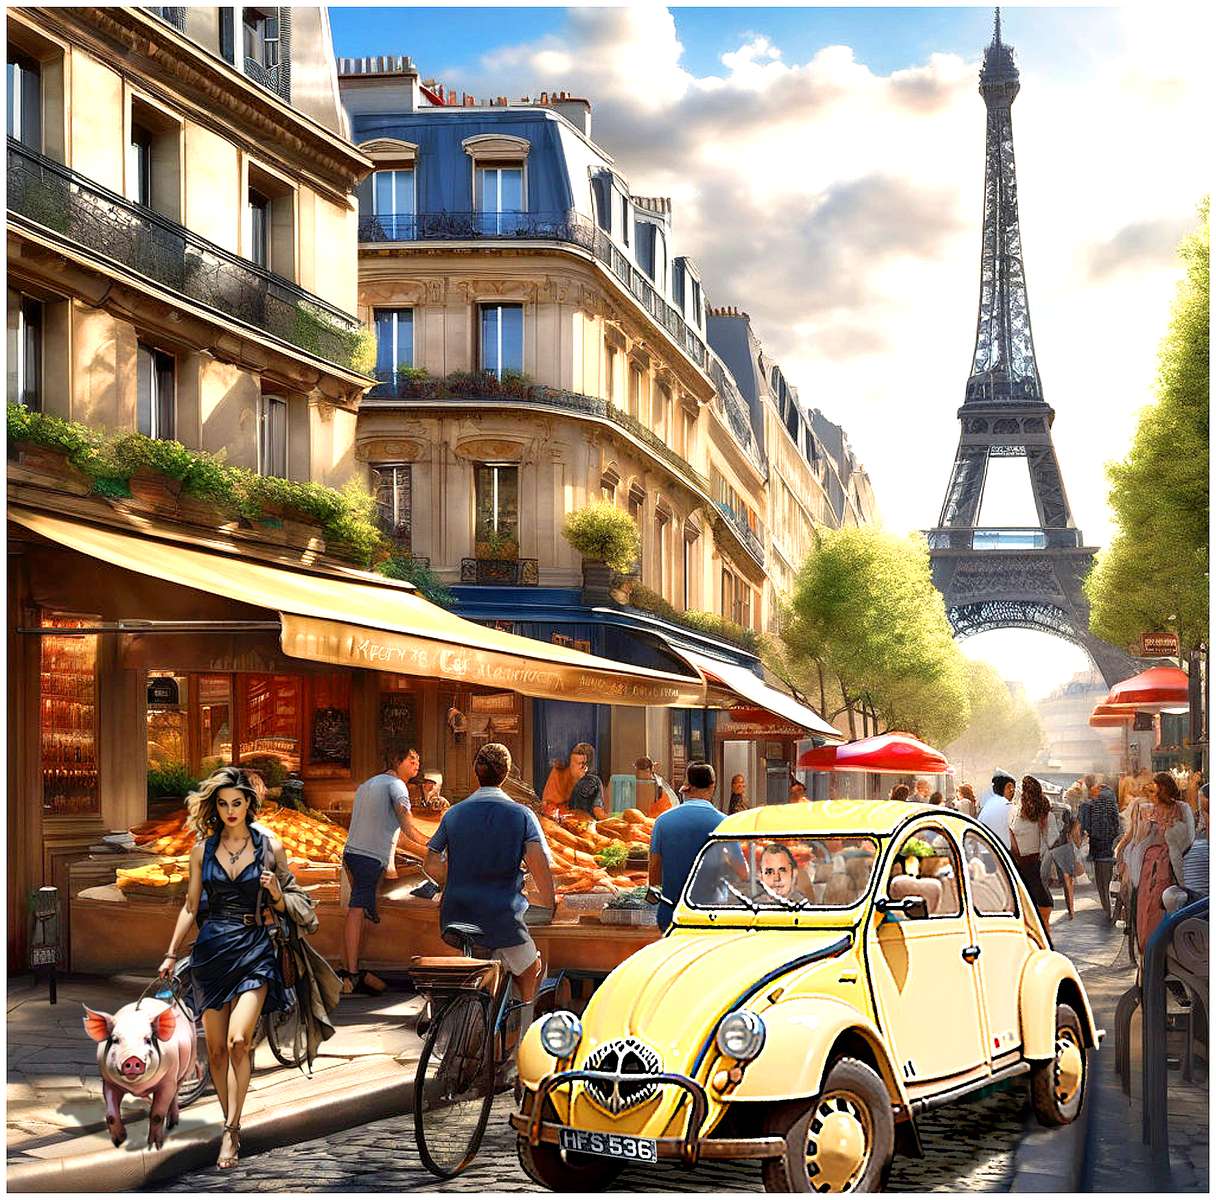 Париж, градът, в който всичко става - и често става онлайн пъзел